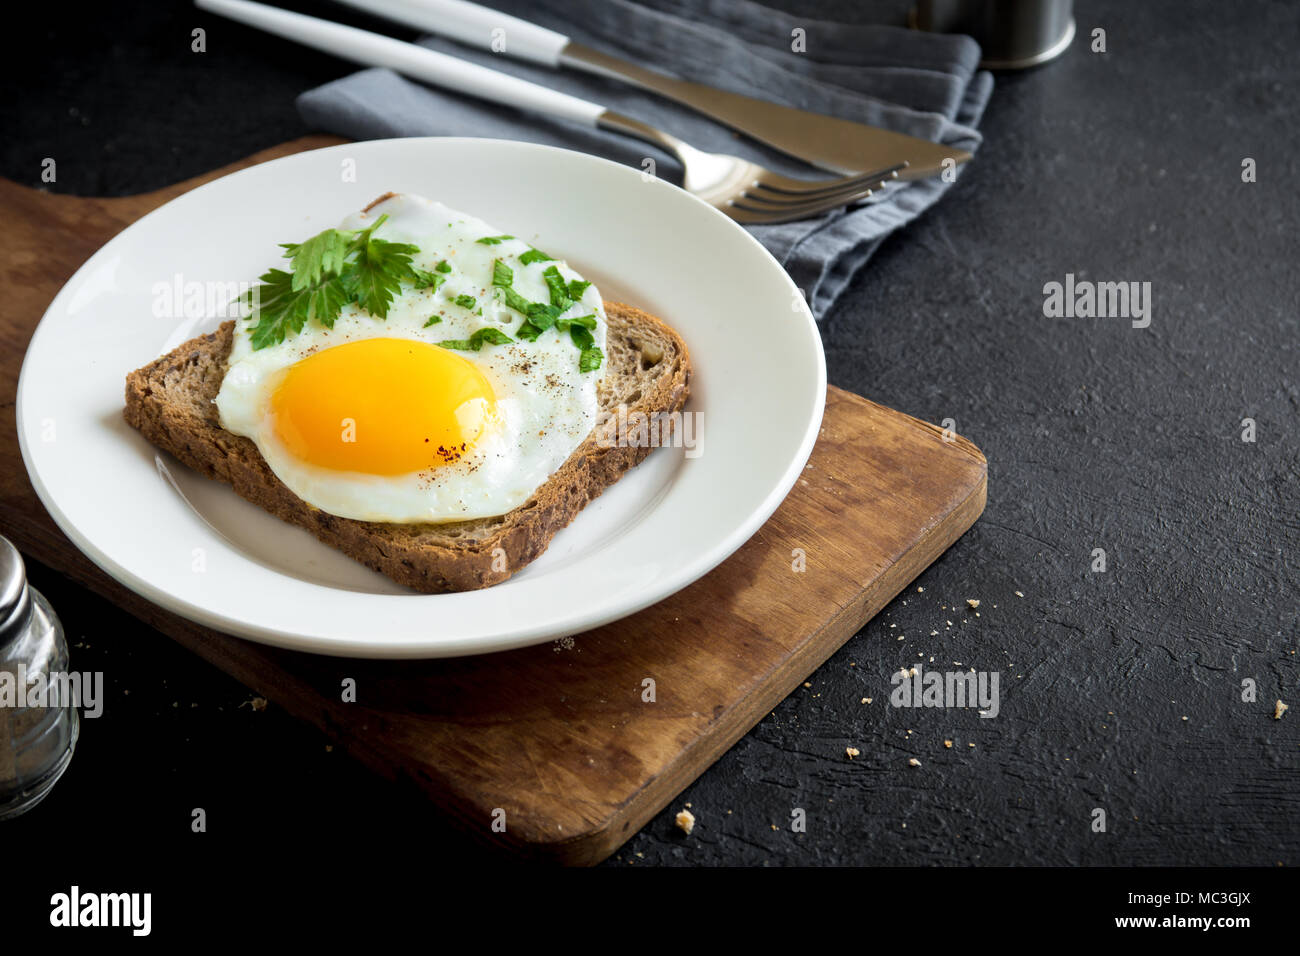 Spiegelei auf Toast zum Frühstück. Spiegelei mit Brot und Petersilie auf weiße Platte auf Schwarz, Ansicht von oben, kopieren. Stockfoto